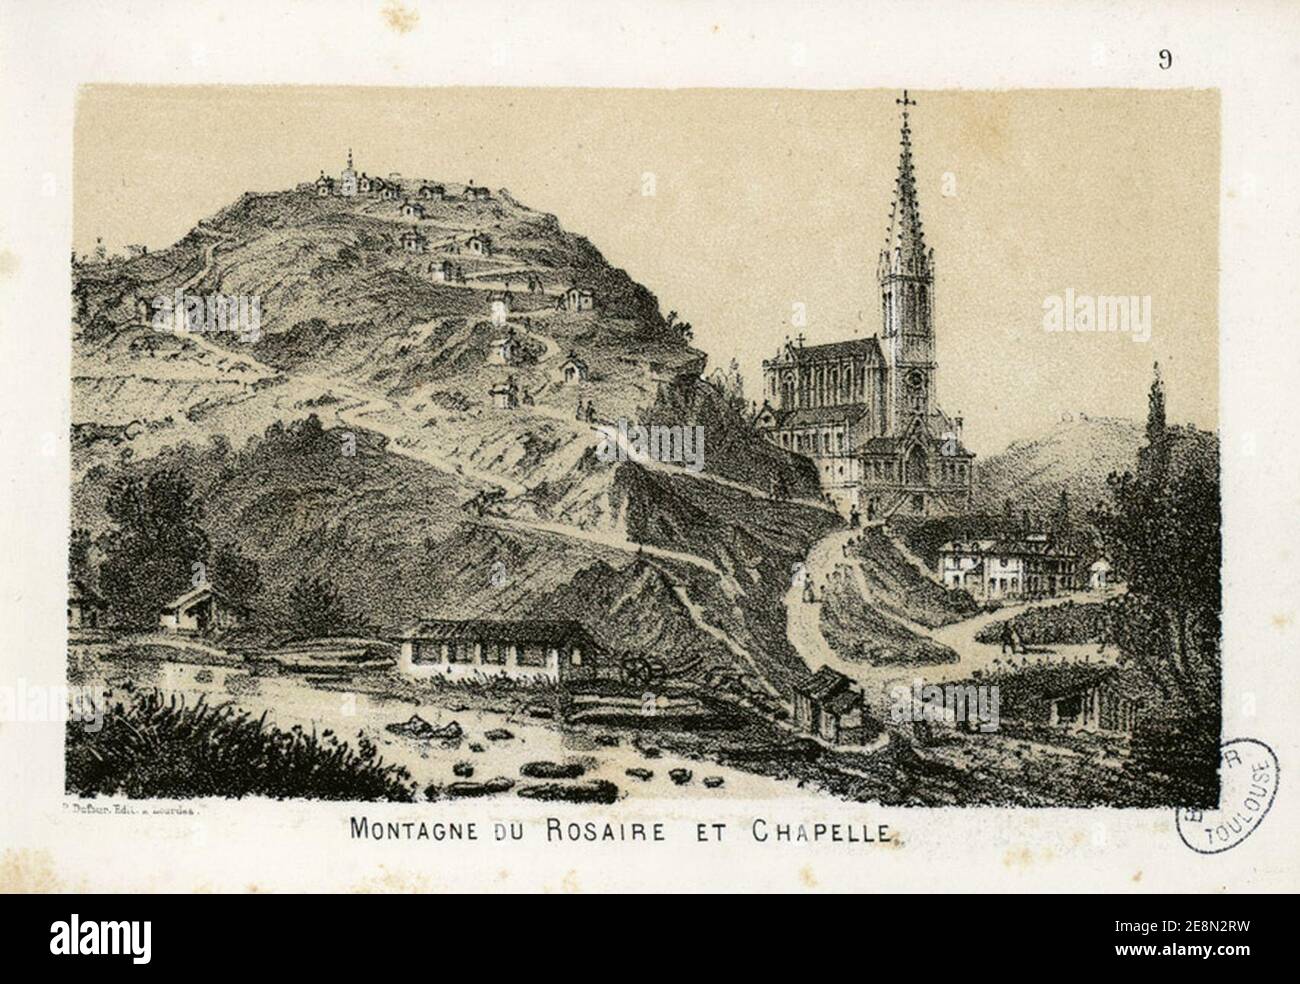 Montagne du Rosaire et Chapelle - Fonds Ancely - B315556101 A GORSEANDRE 010. Stockfoto